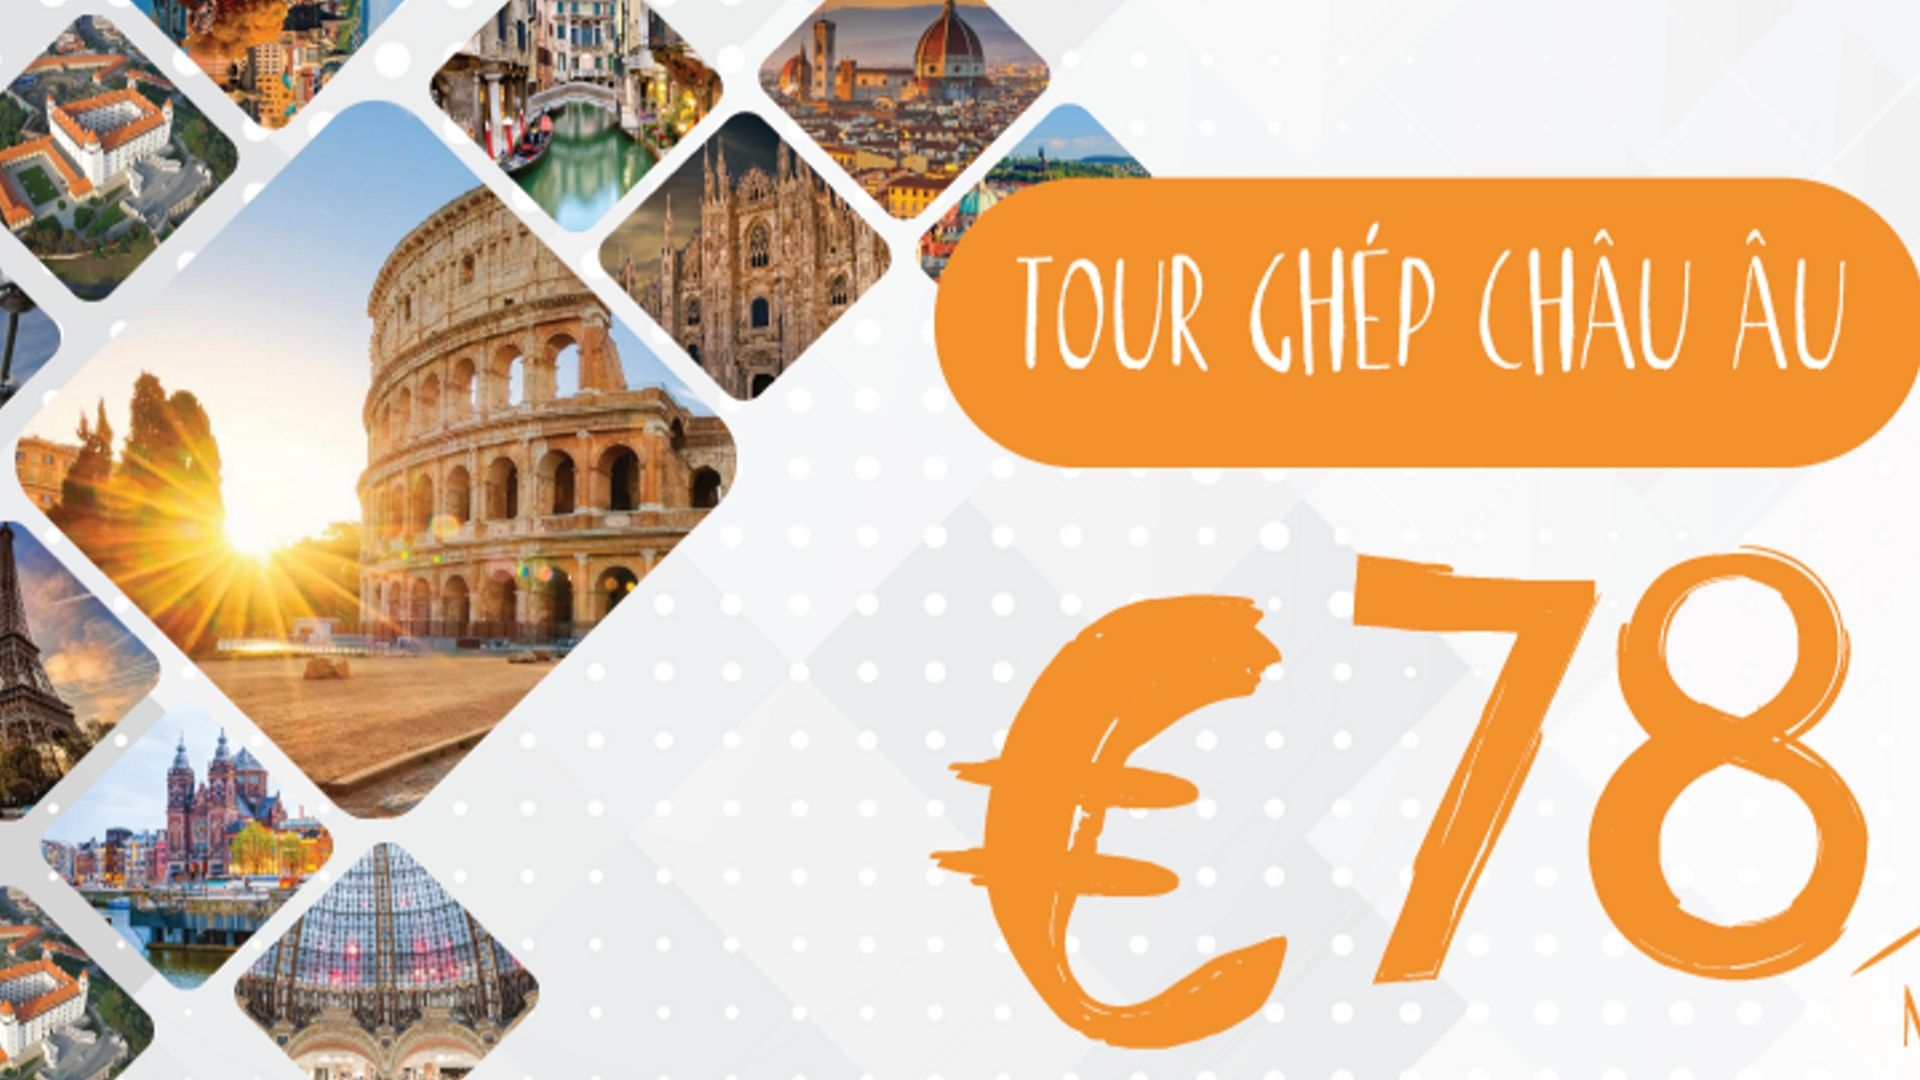 Tour ghép Châu Âu giá rẻ 78E/1 ngày - Một hành trình nhiều quốc gia